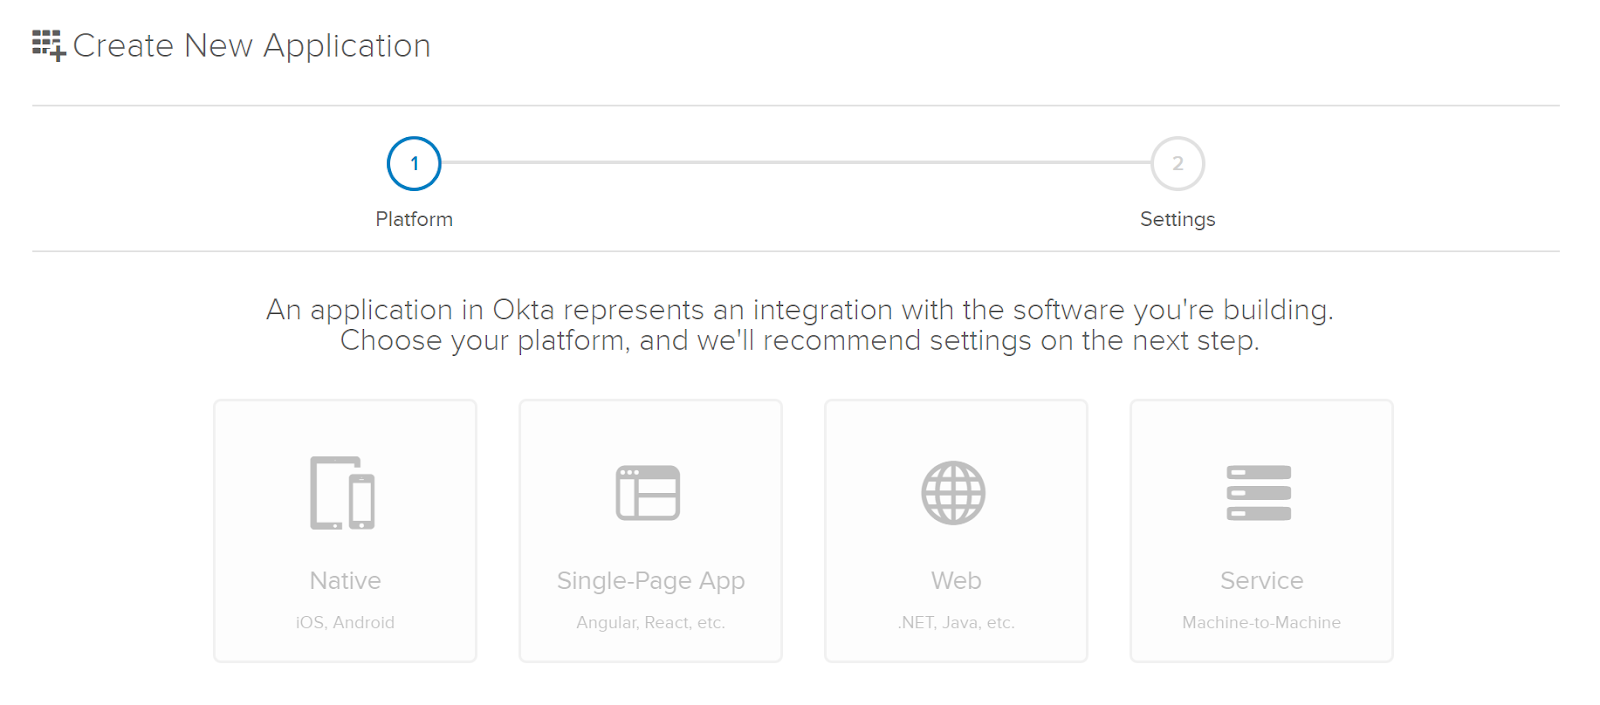 Select Web for Okta App